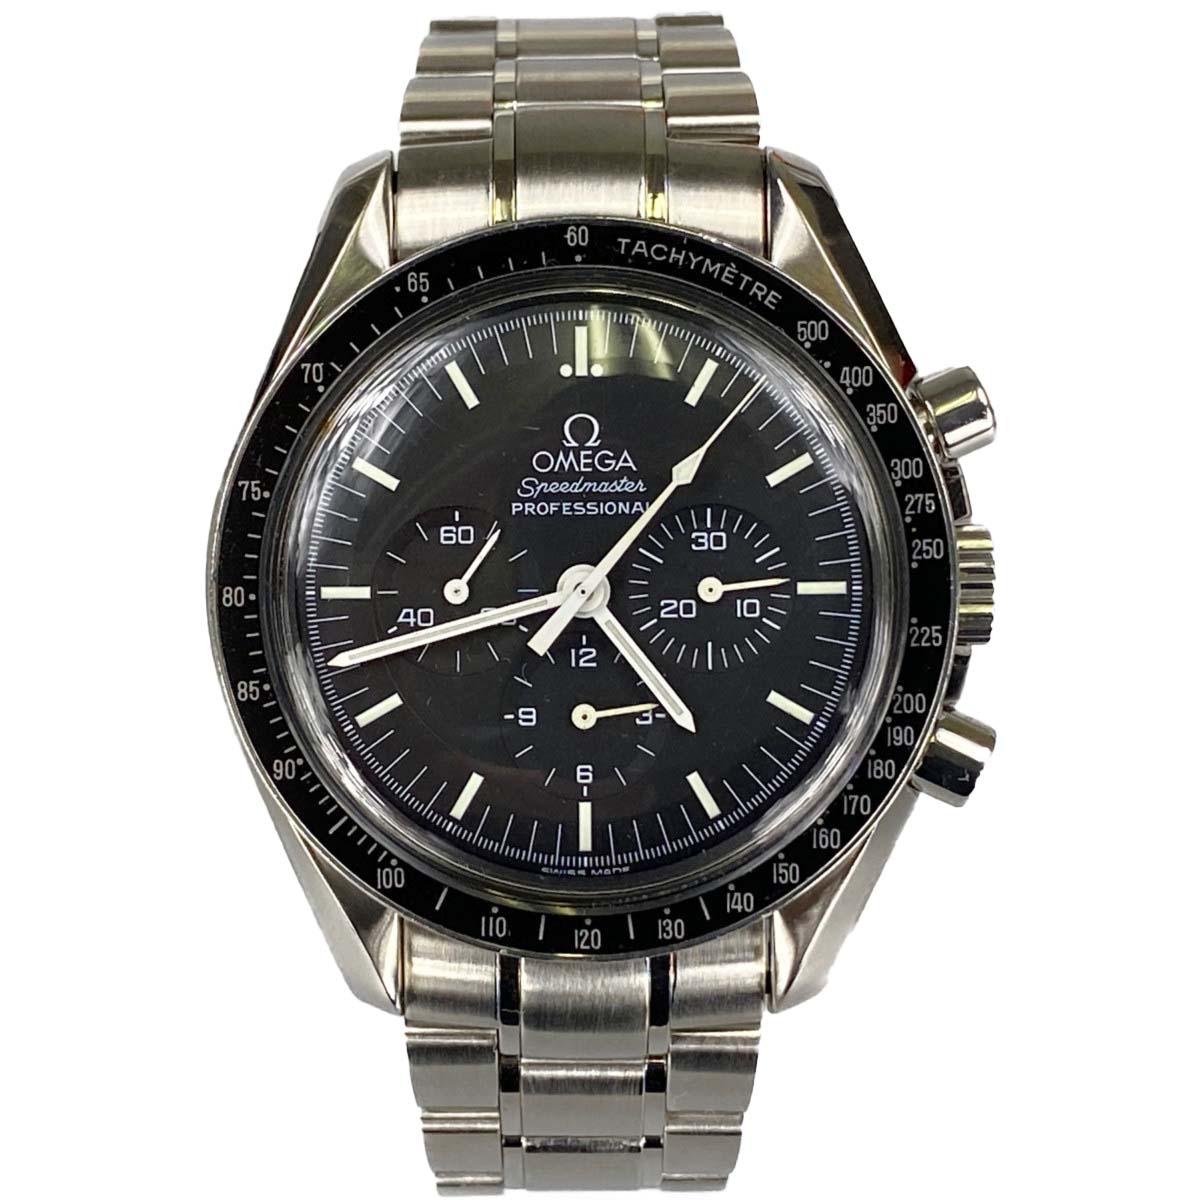 オメガ スピードマスター プロフェッショナル アポロ11号 腕時計